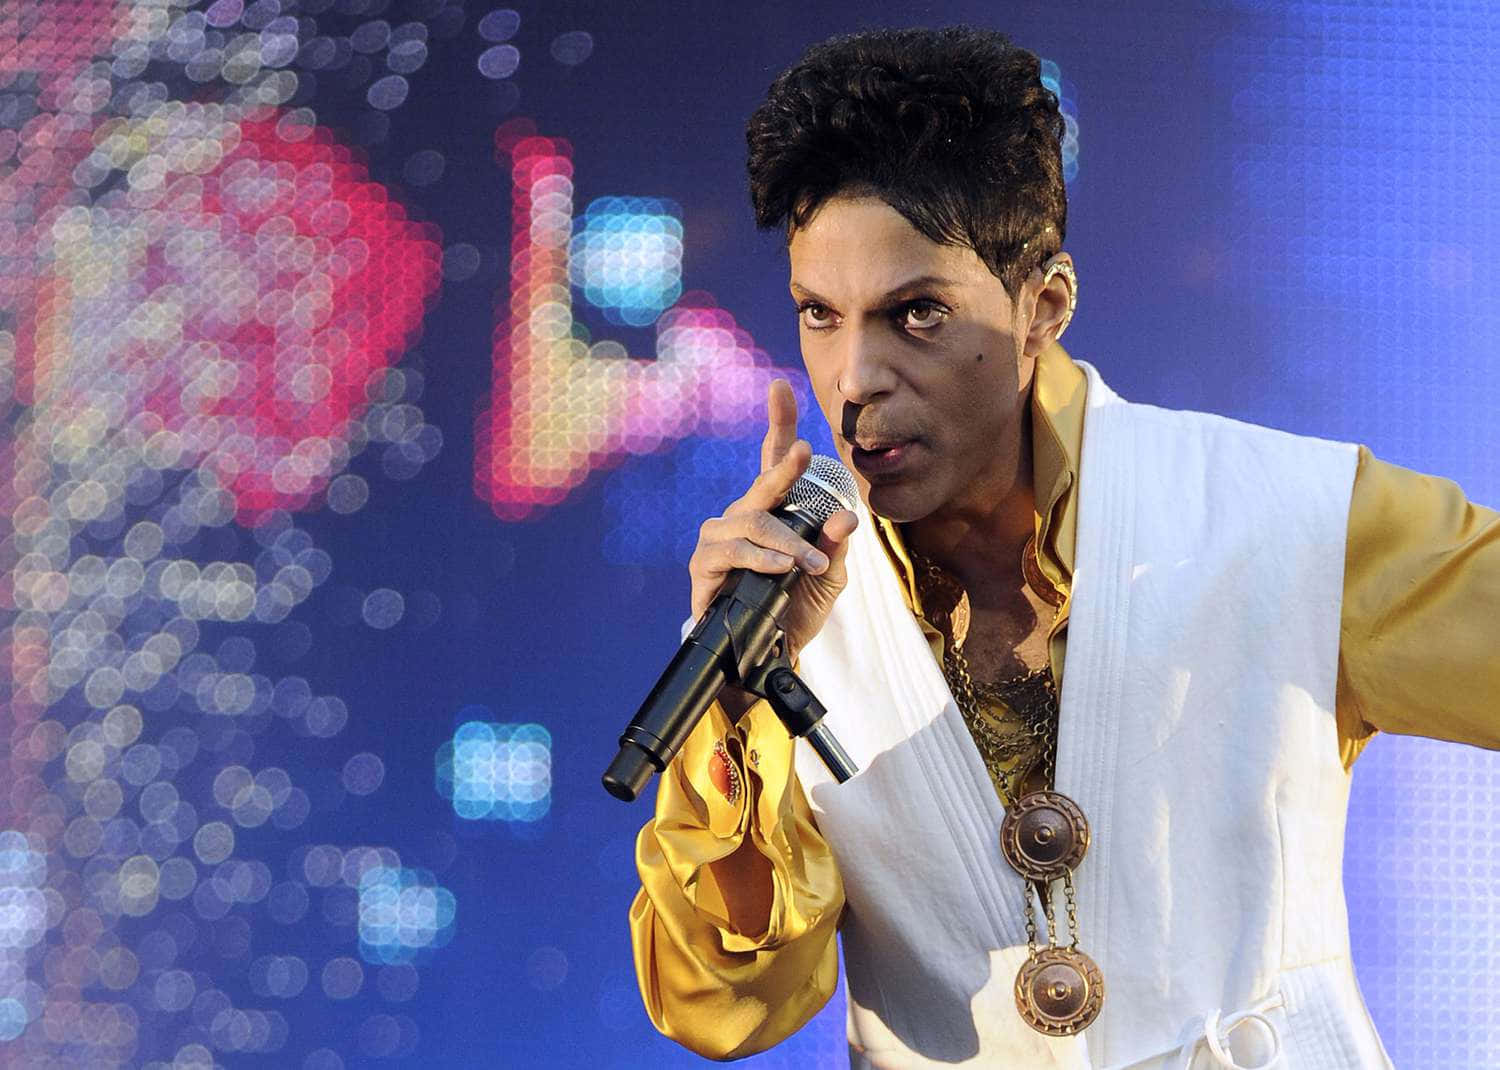 Feiernsie Das Vermächtnis Des Musikikons, Prince